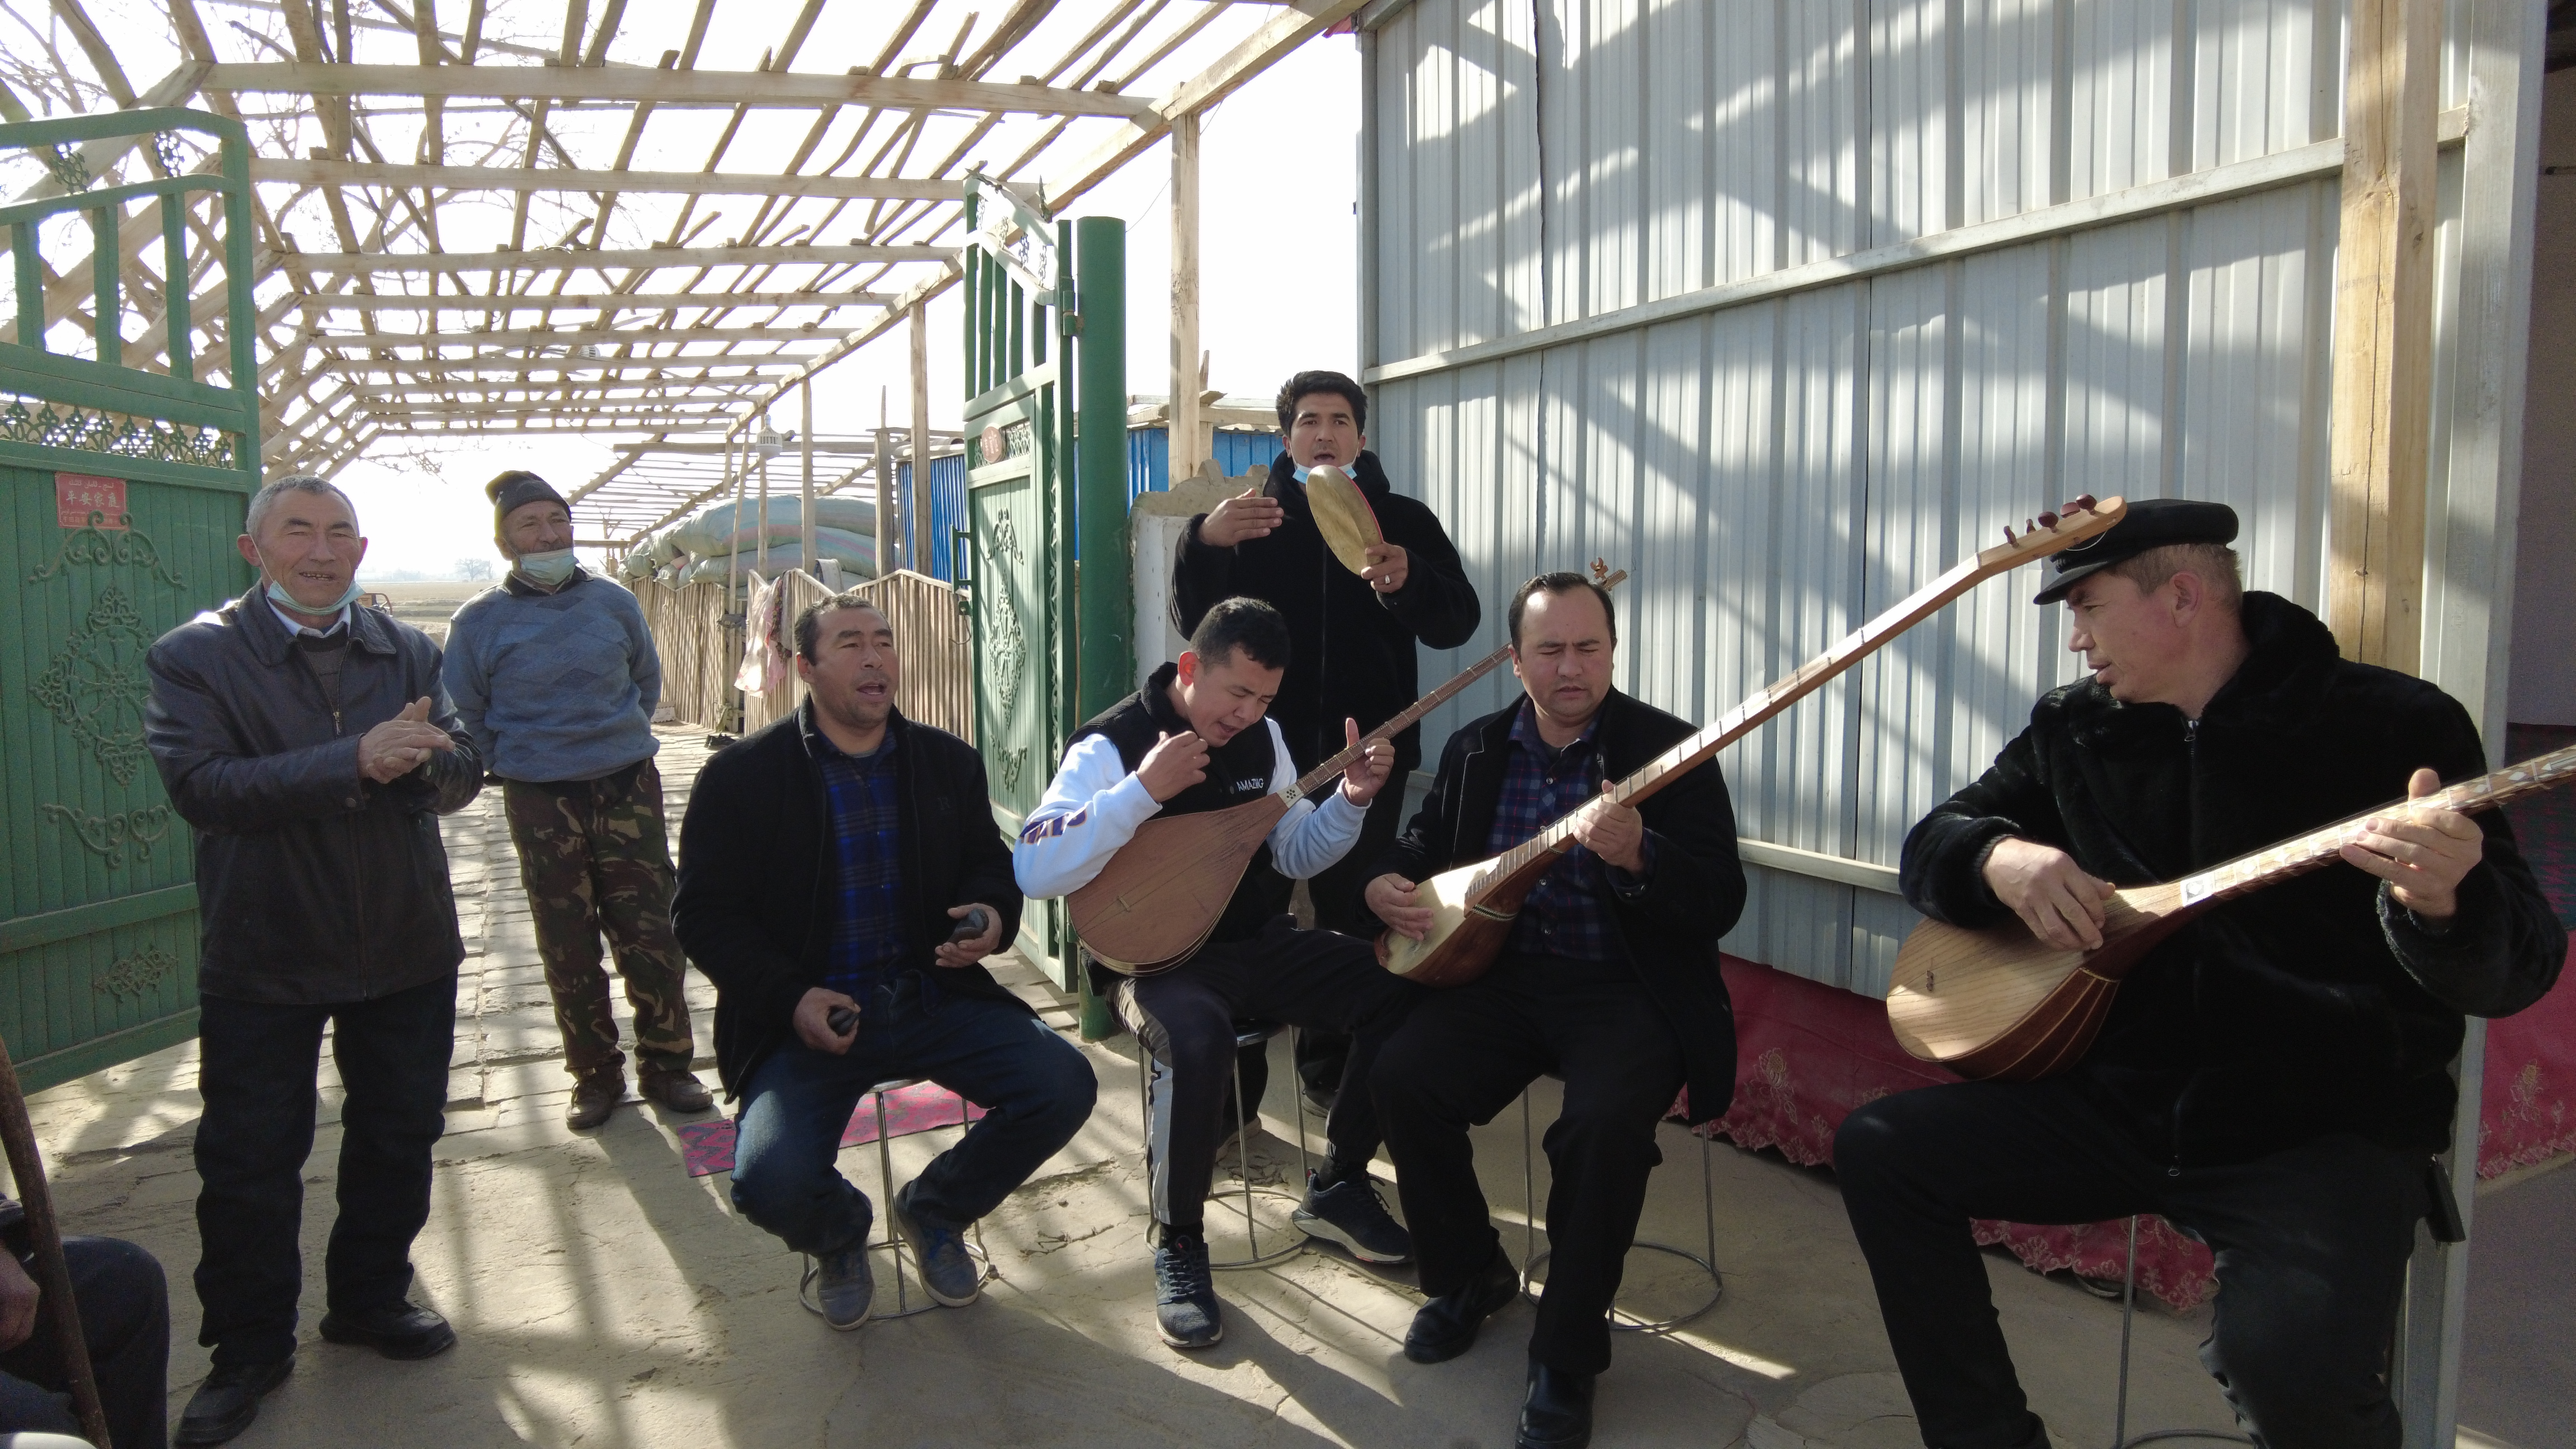 拉依苏民间乐队正在为老人们表演《买赛地的故事》.jpg